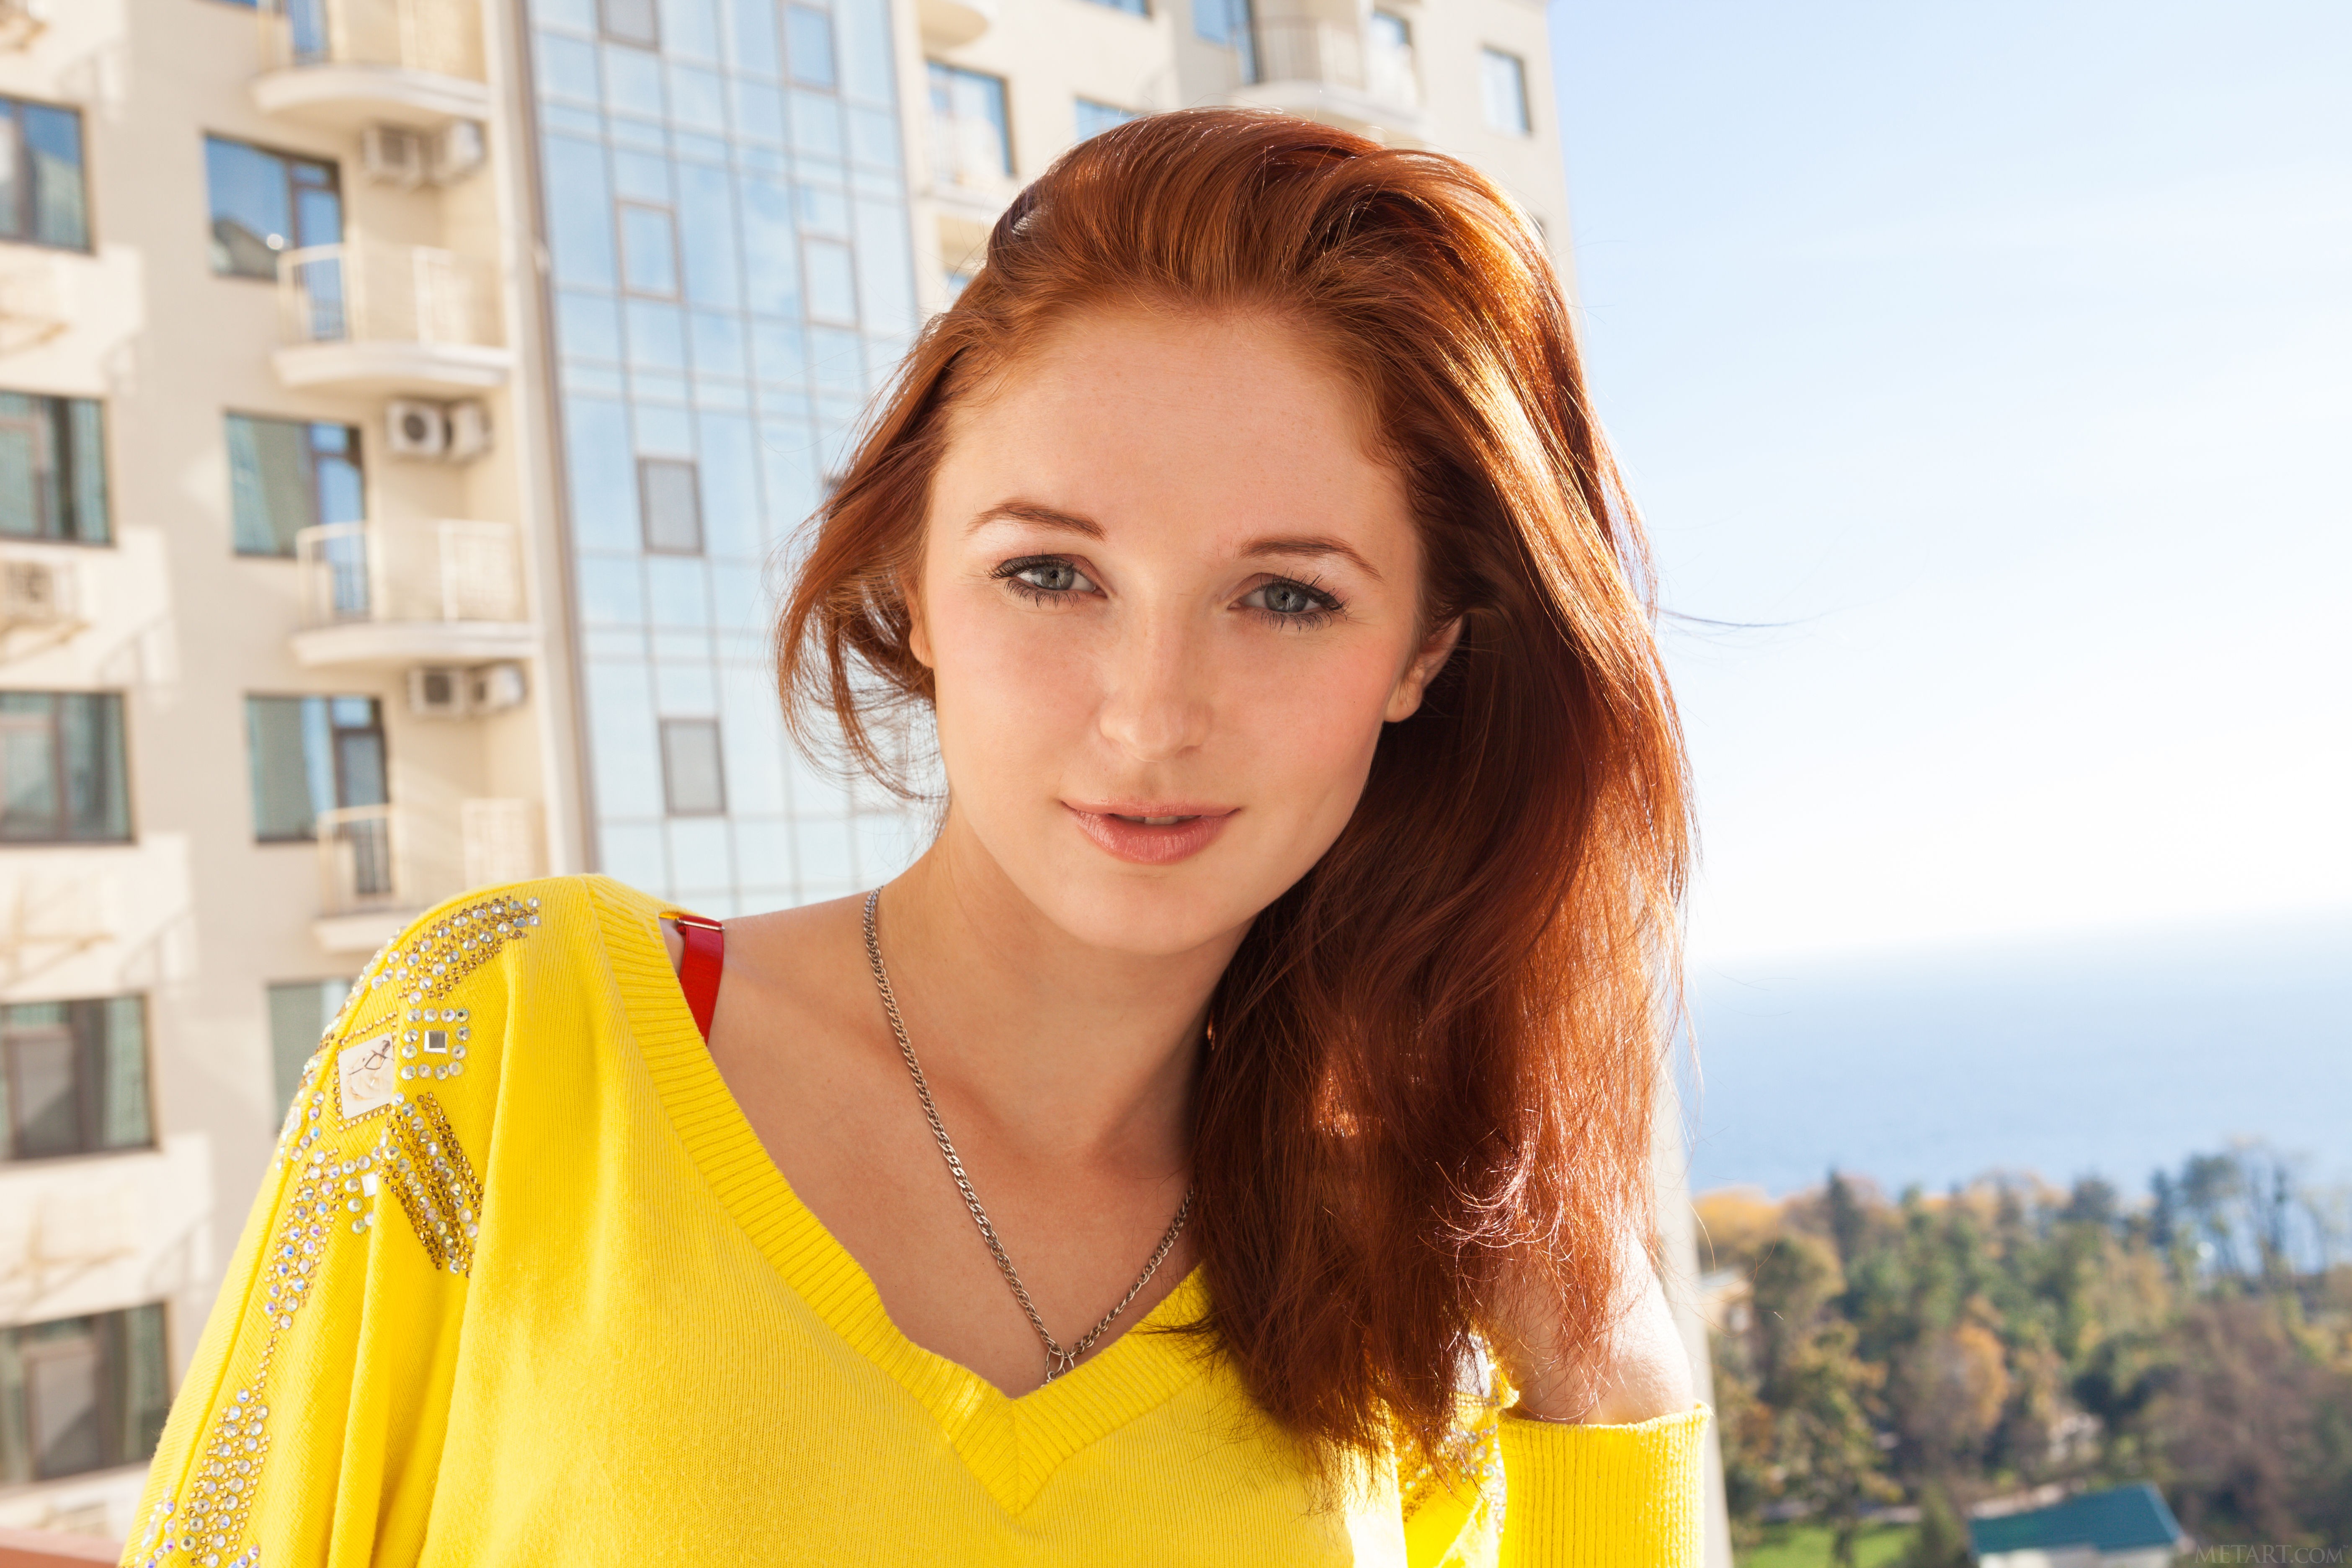 Redhead Women Long Hair Yellow Sweater Smiling Women Outdoors Blue Eyes 5616x3744